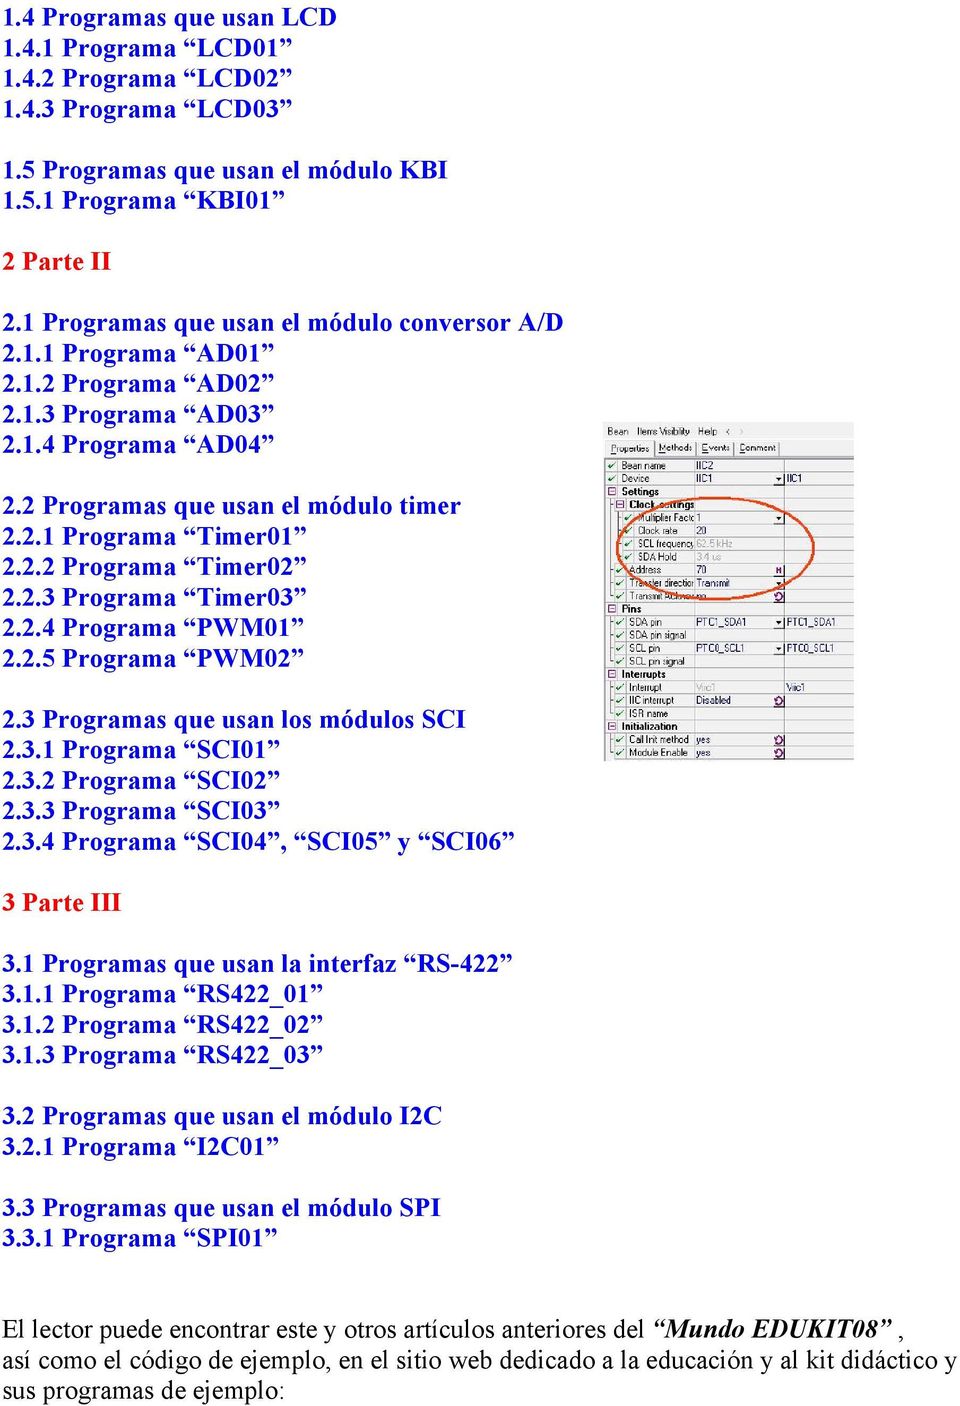 2.3 Programa Timer03 2.2.4 Programa PWM01 2.2.5 Programa PWM02 2.3 Programas que usan los módulos SCI 2.3.1 Programa SCI01 2.3.2 Programa SCI02 2.3.3 Programa SCI03 2.3.4 Programa SCI04, SCI05 y SCI06 3 Parte III 3.